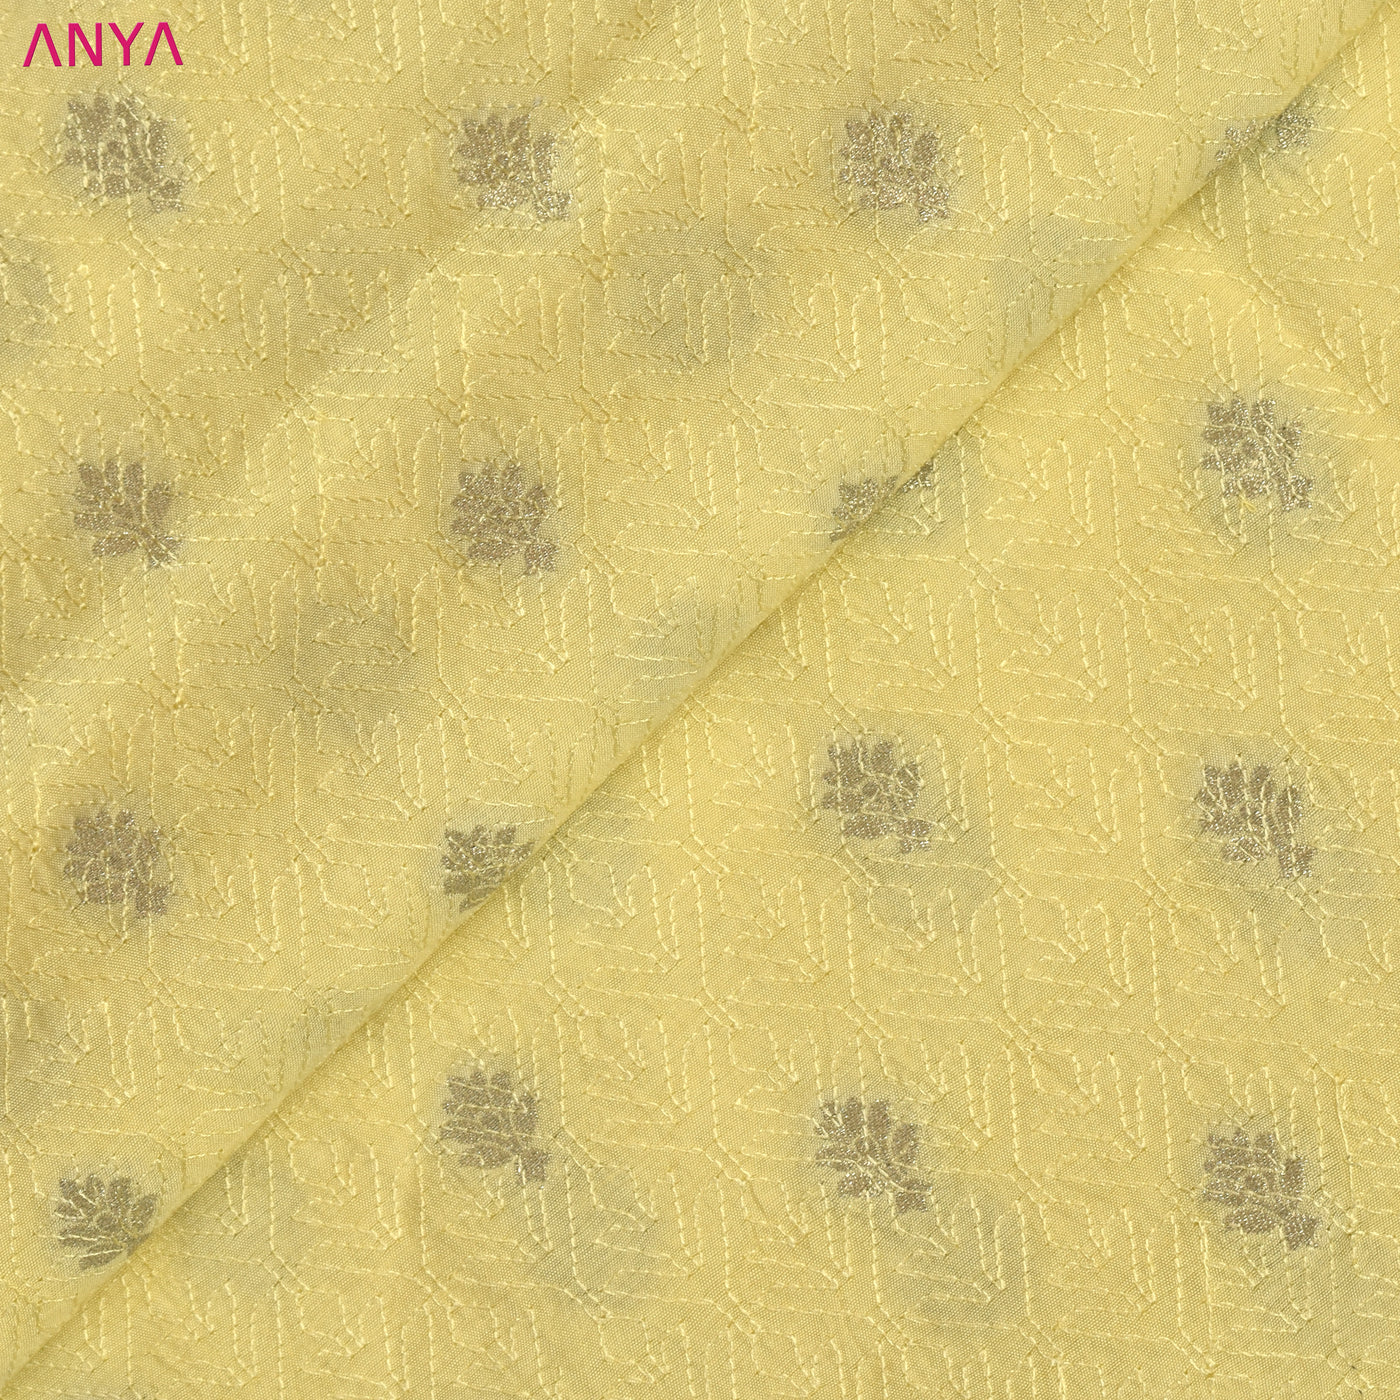 Lemon Yellow Banarasi Silk Fabric with Thread Zari Butta Design